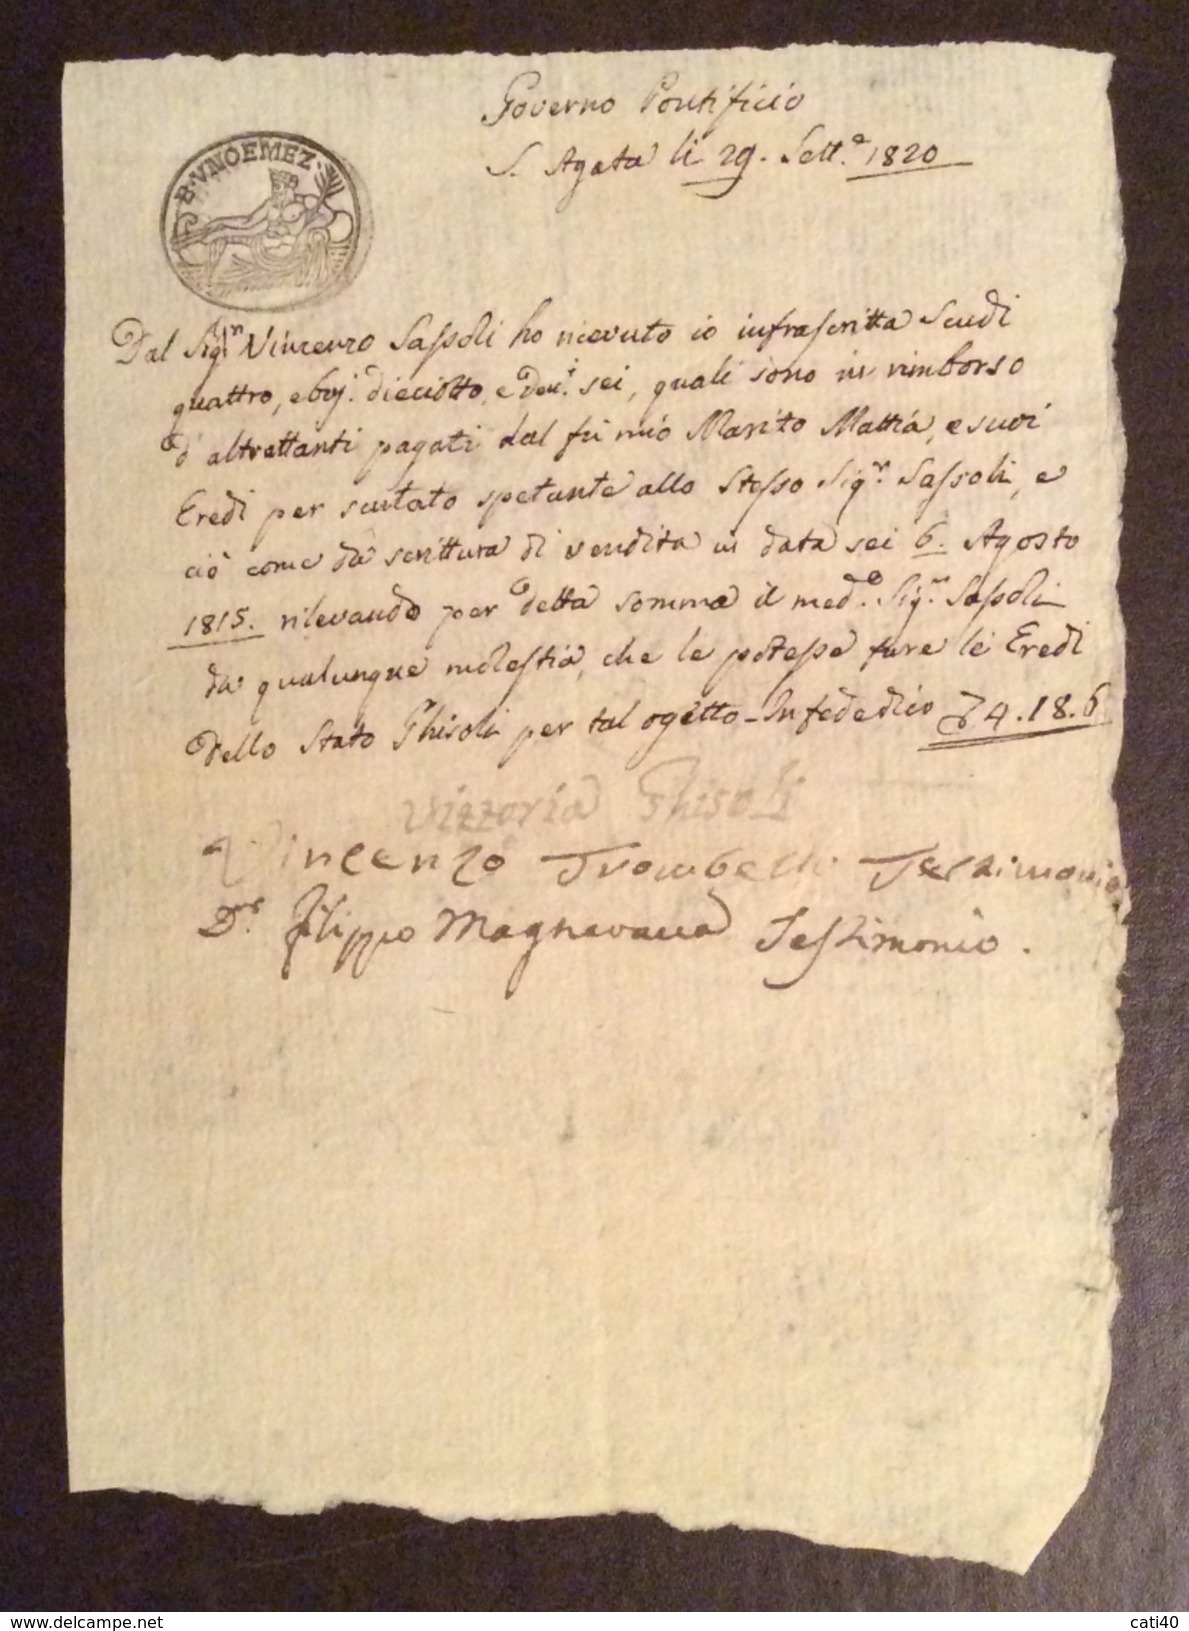 GOVERNO PONTIFICIO S.AGATA 29/9/1820 MANOSCRITTO IN CARTA BOLLATA BAJ UNO E MEZZO CON FIRME AUTOGRAFE - Manoscritti